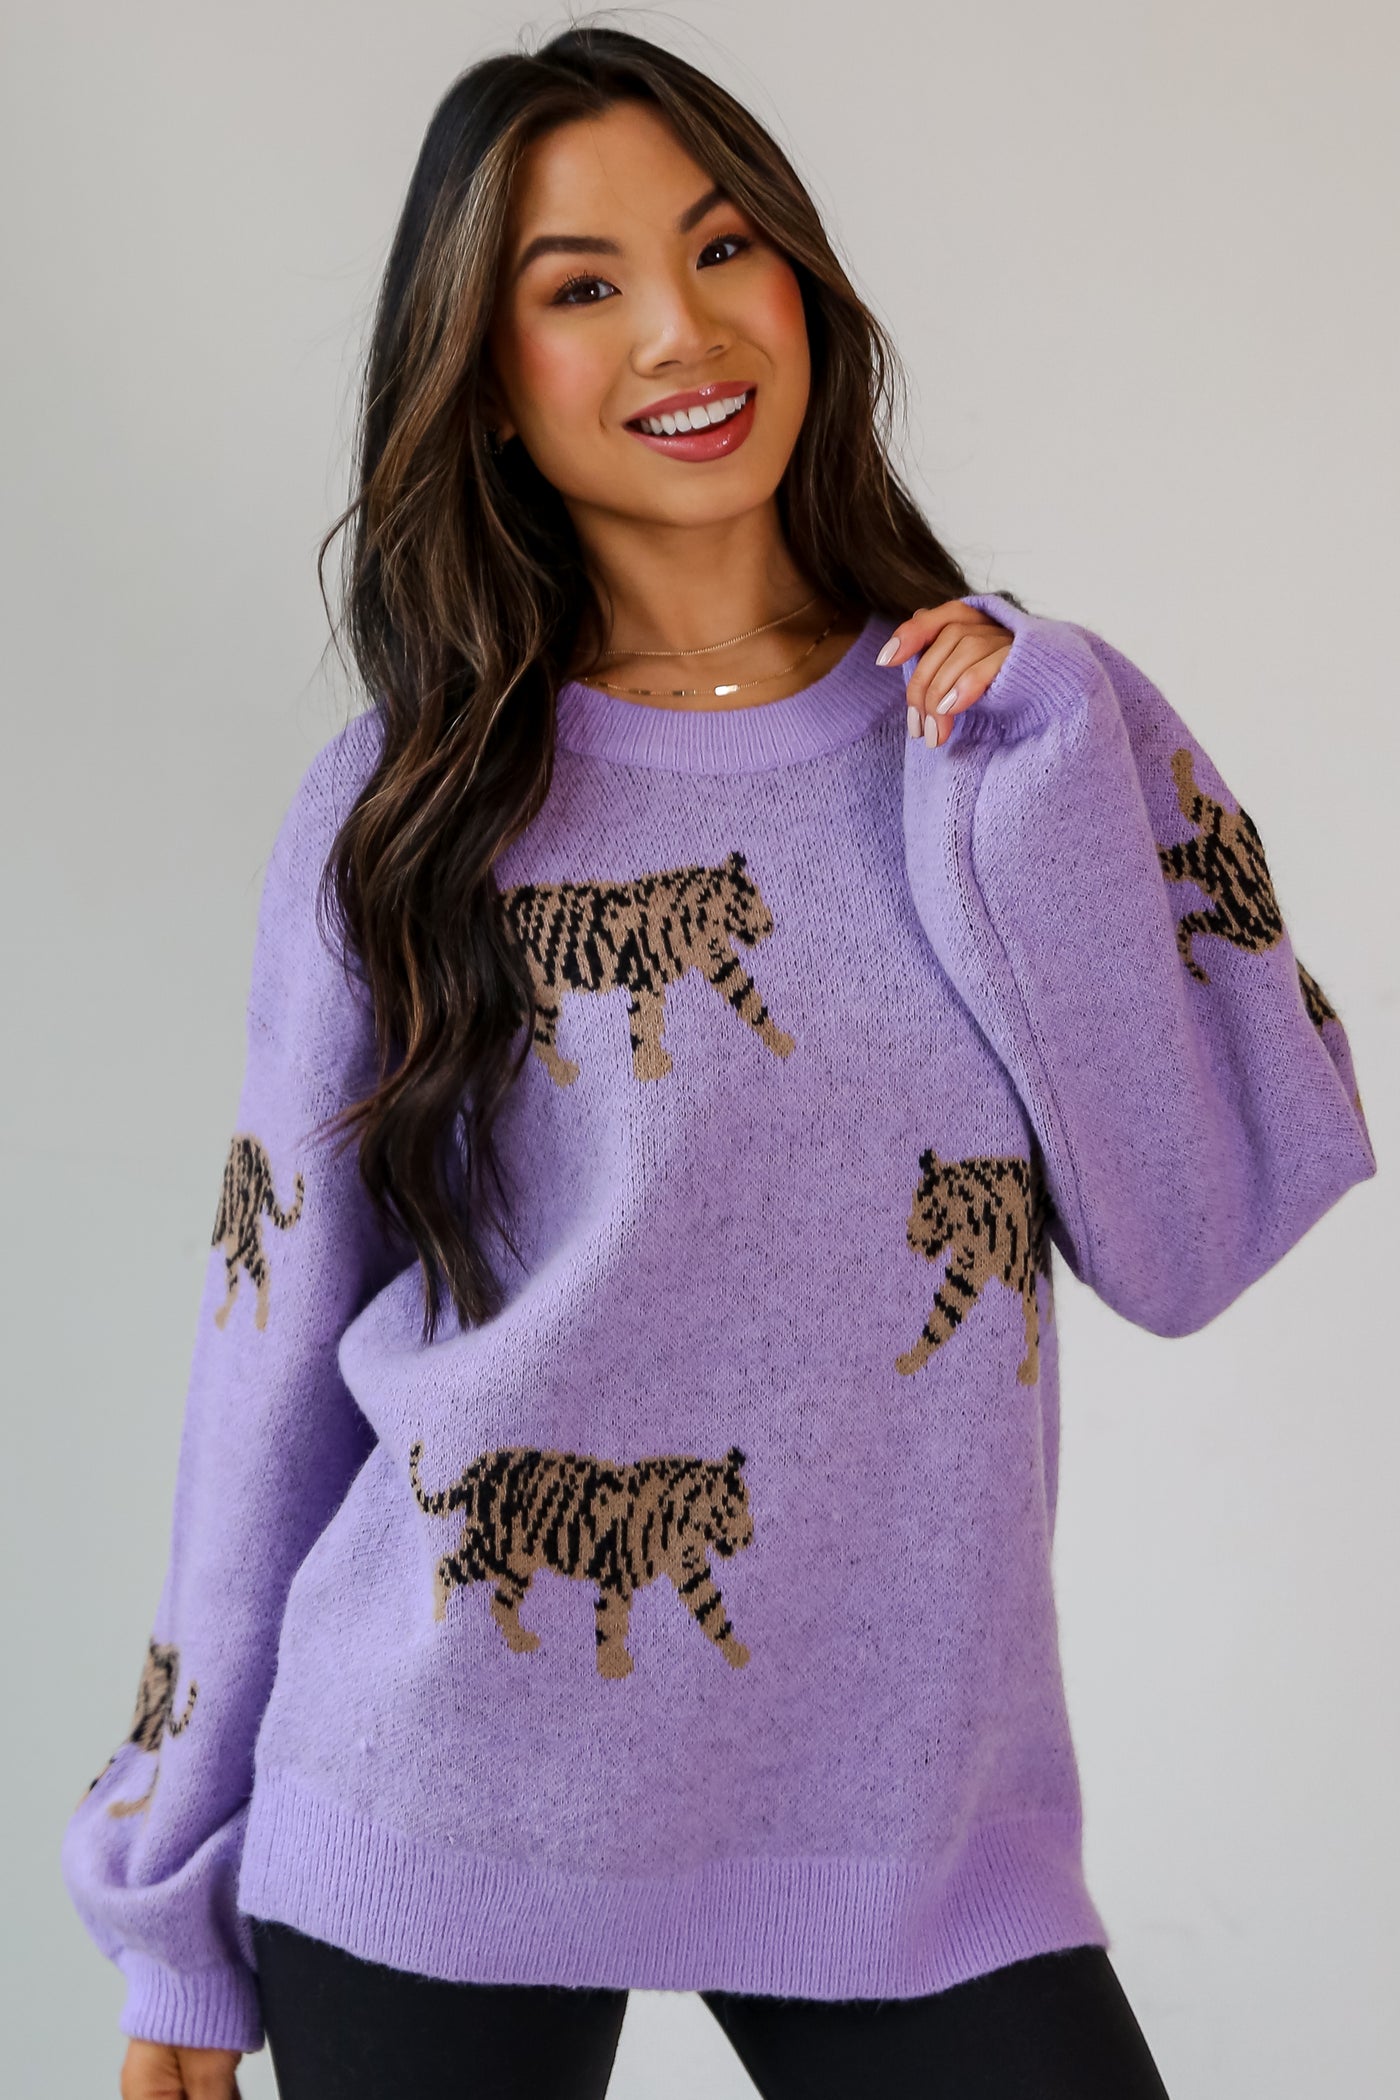 Lavender Tiger Oversized Sweater on model